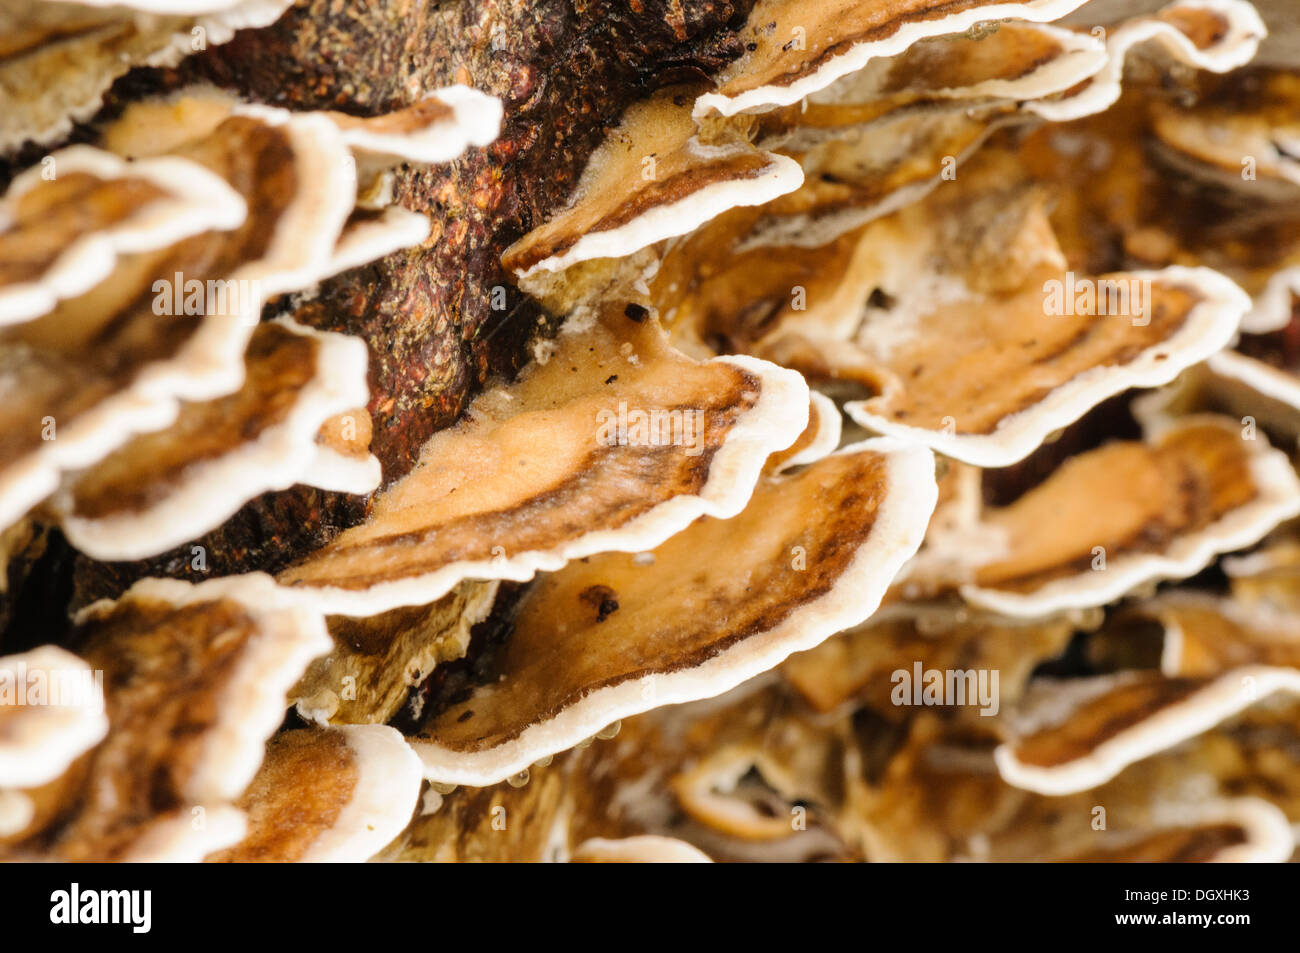 Zitternden Merulius (Merulius Tremellosus, Phlebia Tremellosa), eine gallertartige Halterung Pilz auf verrottendem Holz gefunden Stockfoto